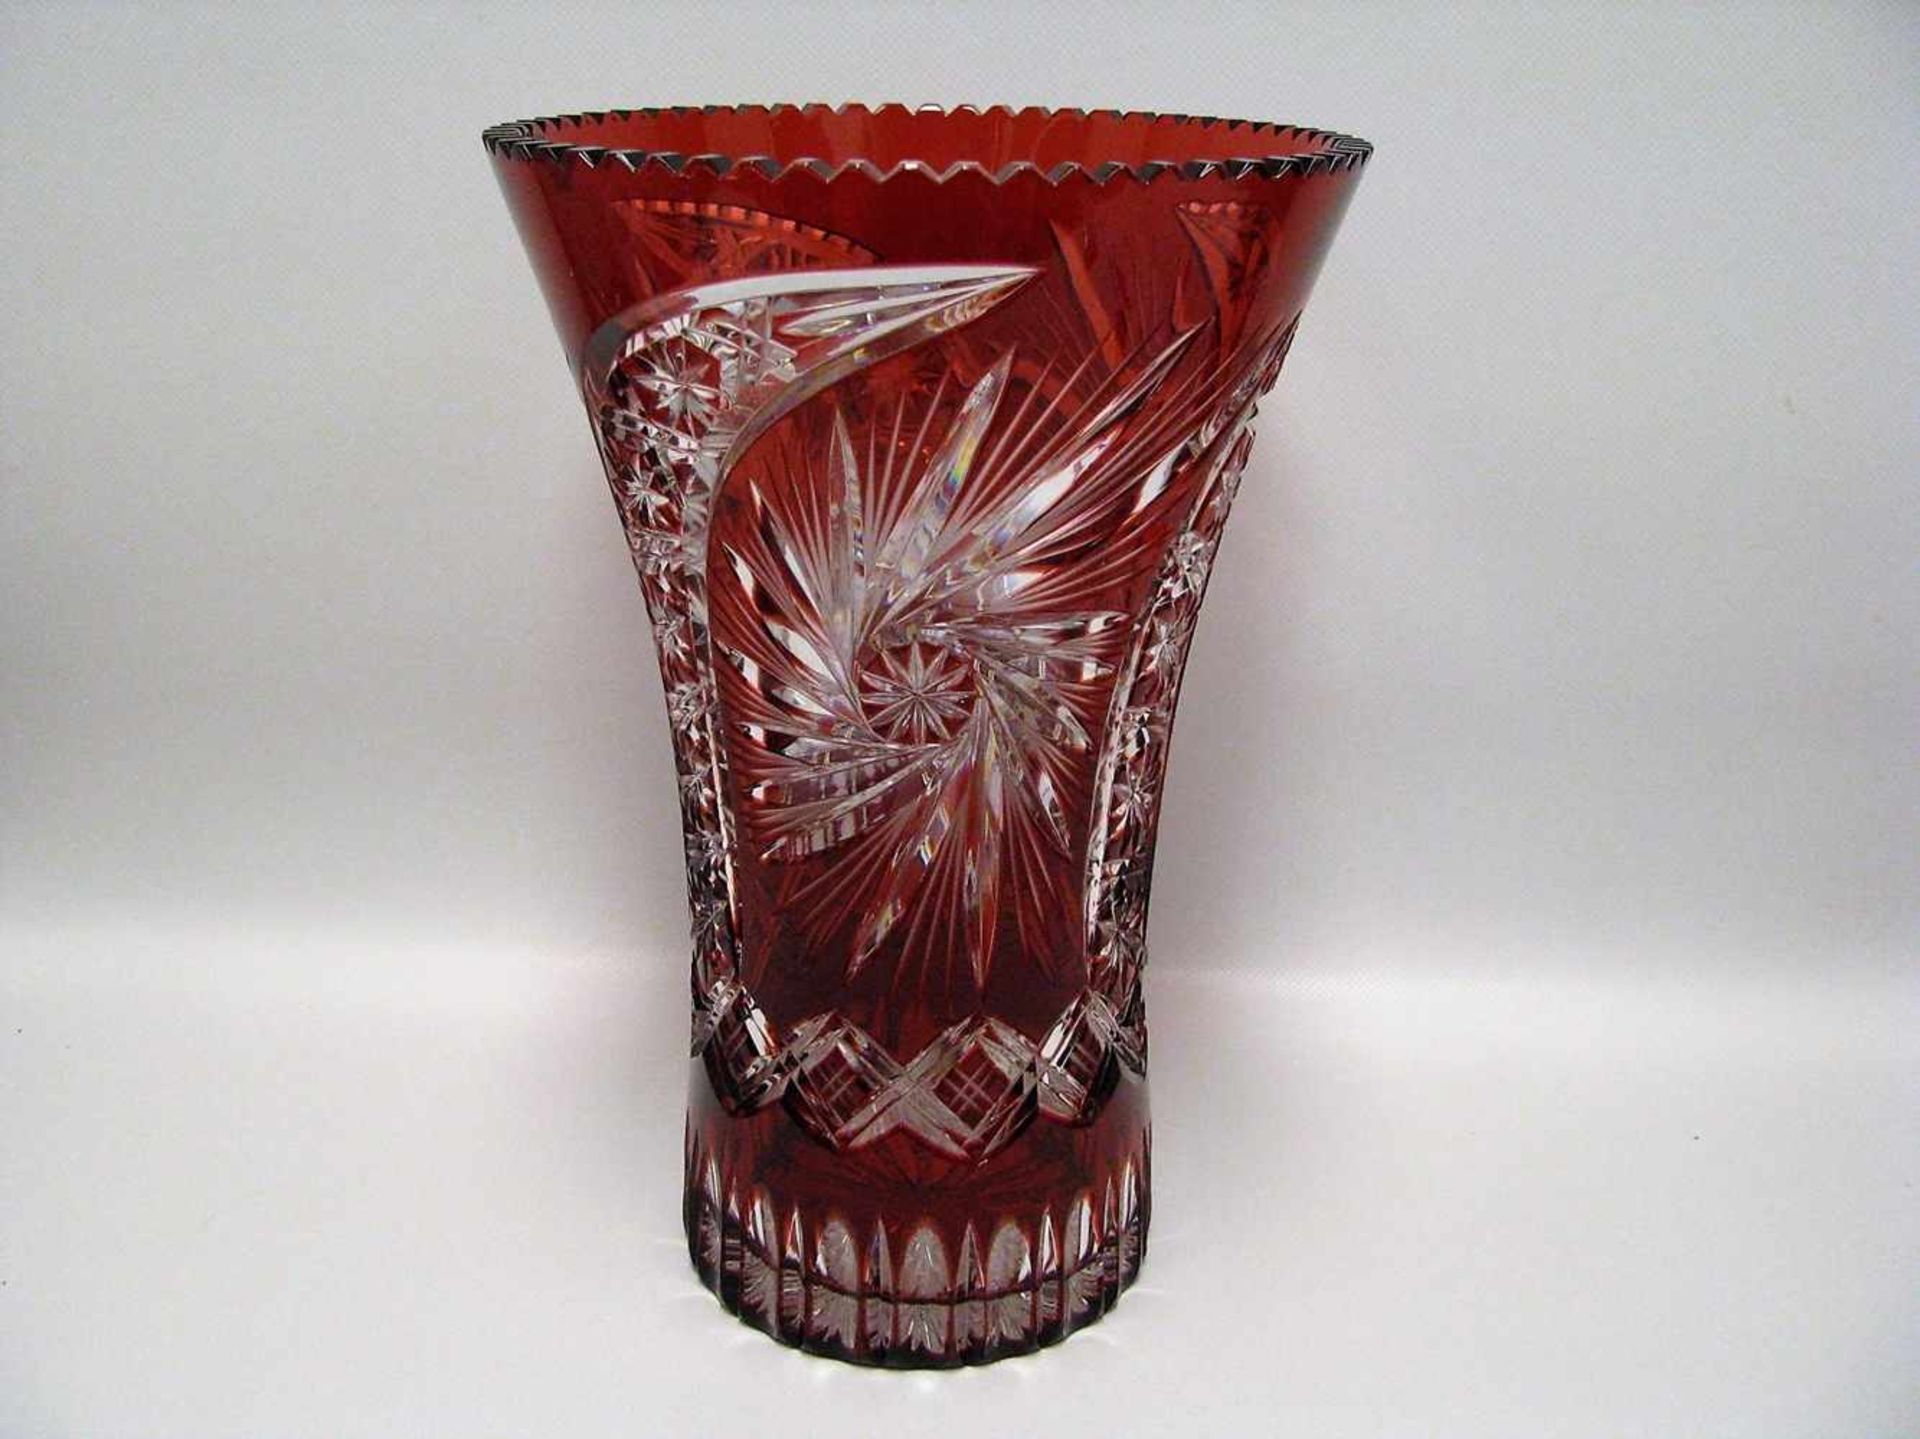 Große Vase, Bleikristall reich beschliffen, rubinroter Überfang, h 30 cm, d 21 cm.- - -19.00 %